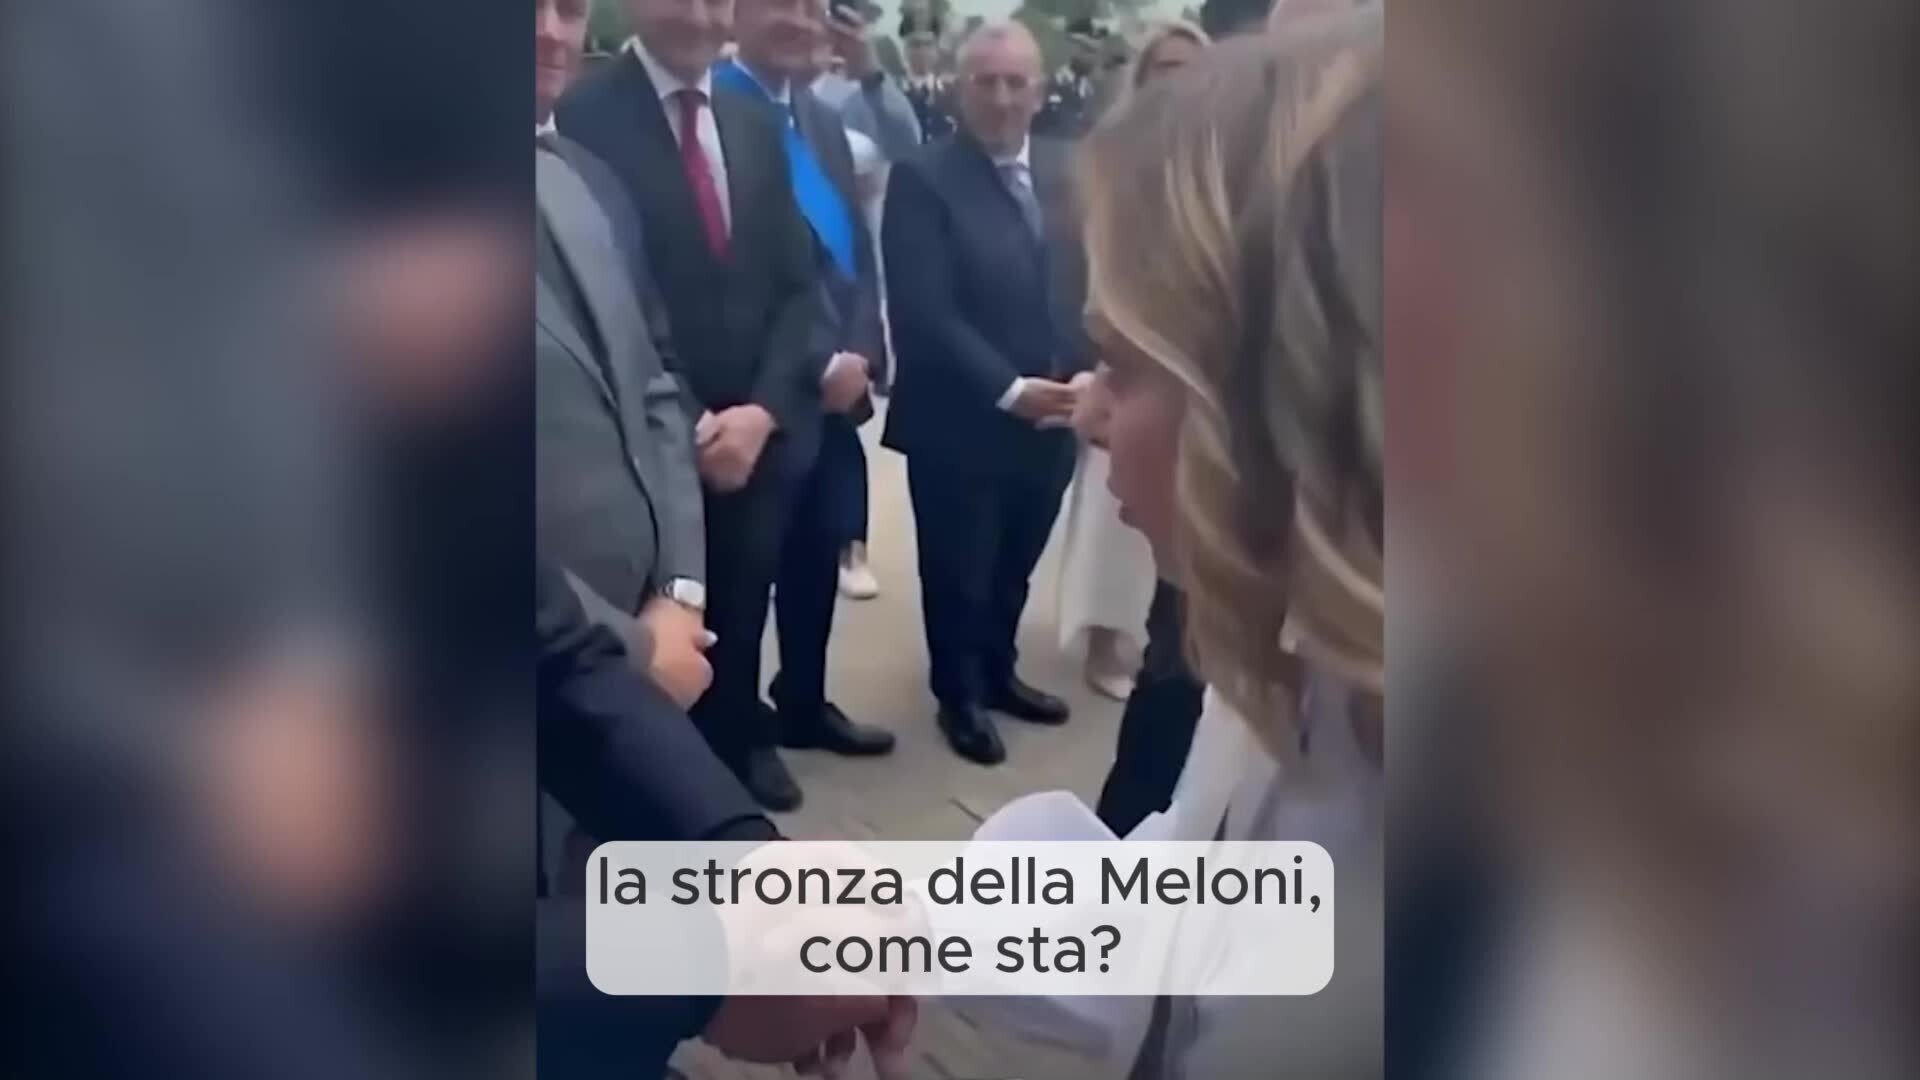 "La stron.. della Meloni": il saluto della premier a De Luca